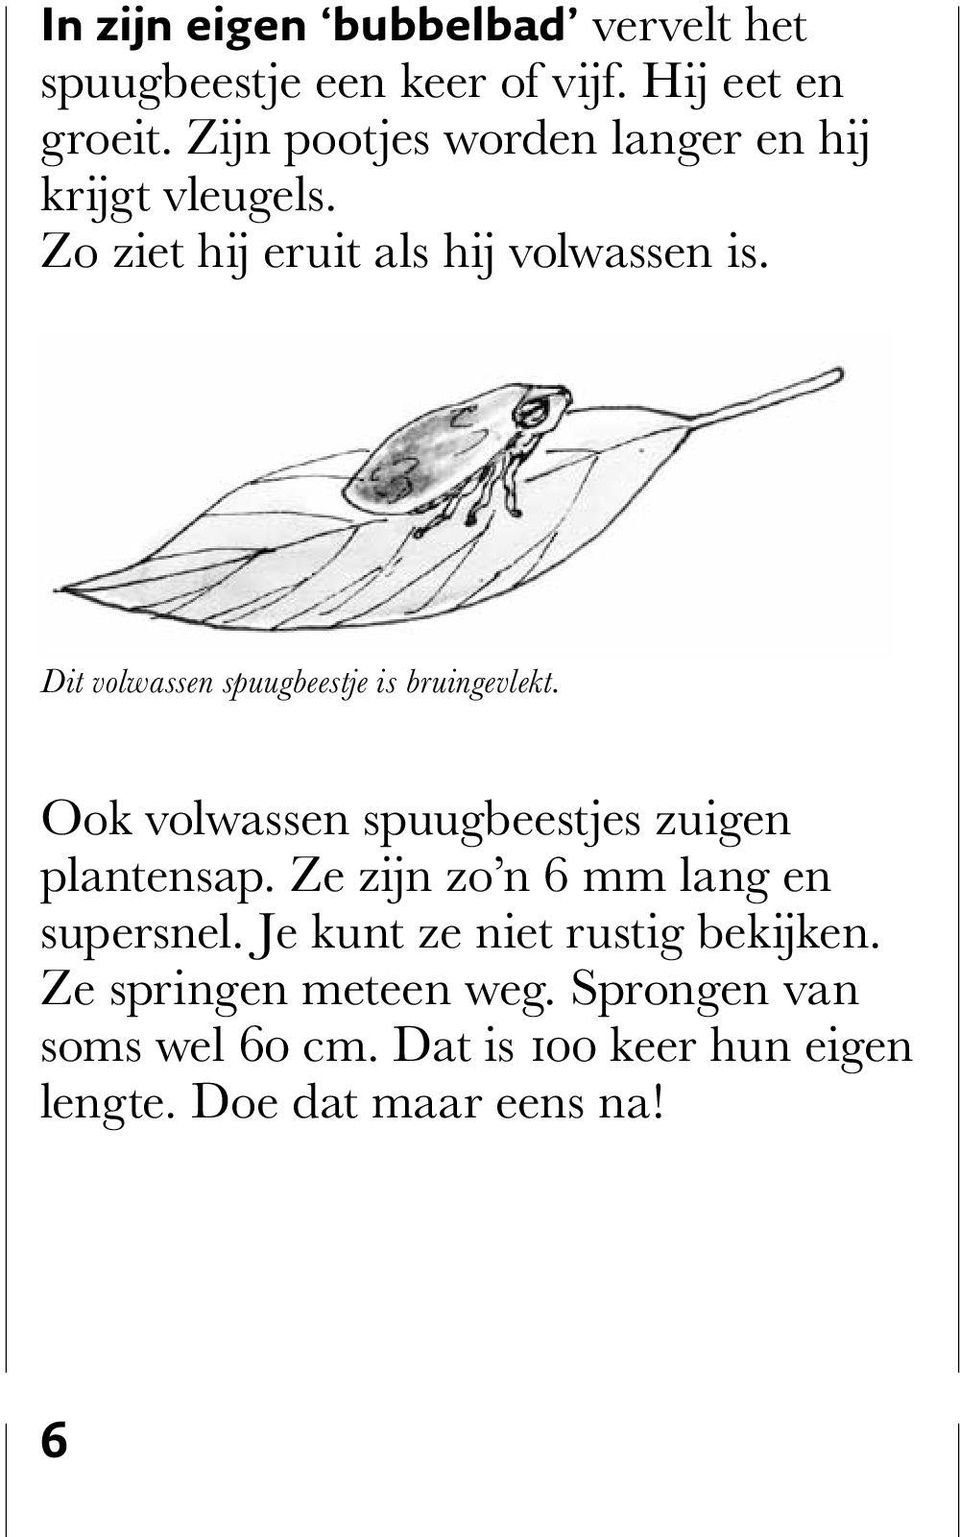 Dit volwassen spuugbeestje is bruingevlekt. Ook volwassen spuugbeestjes zuigen plantensap.